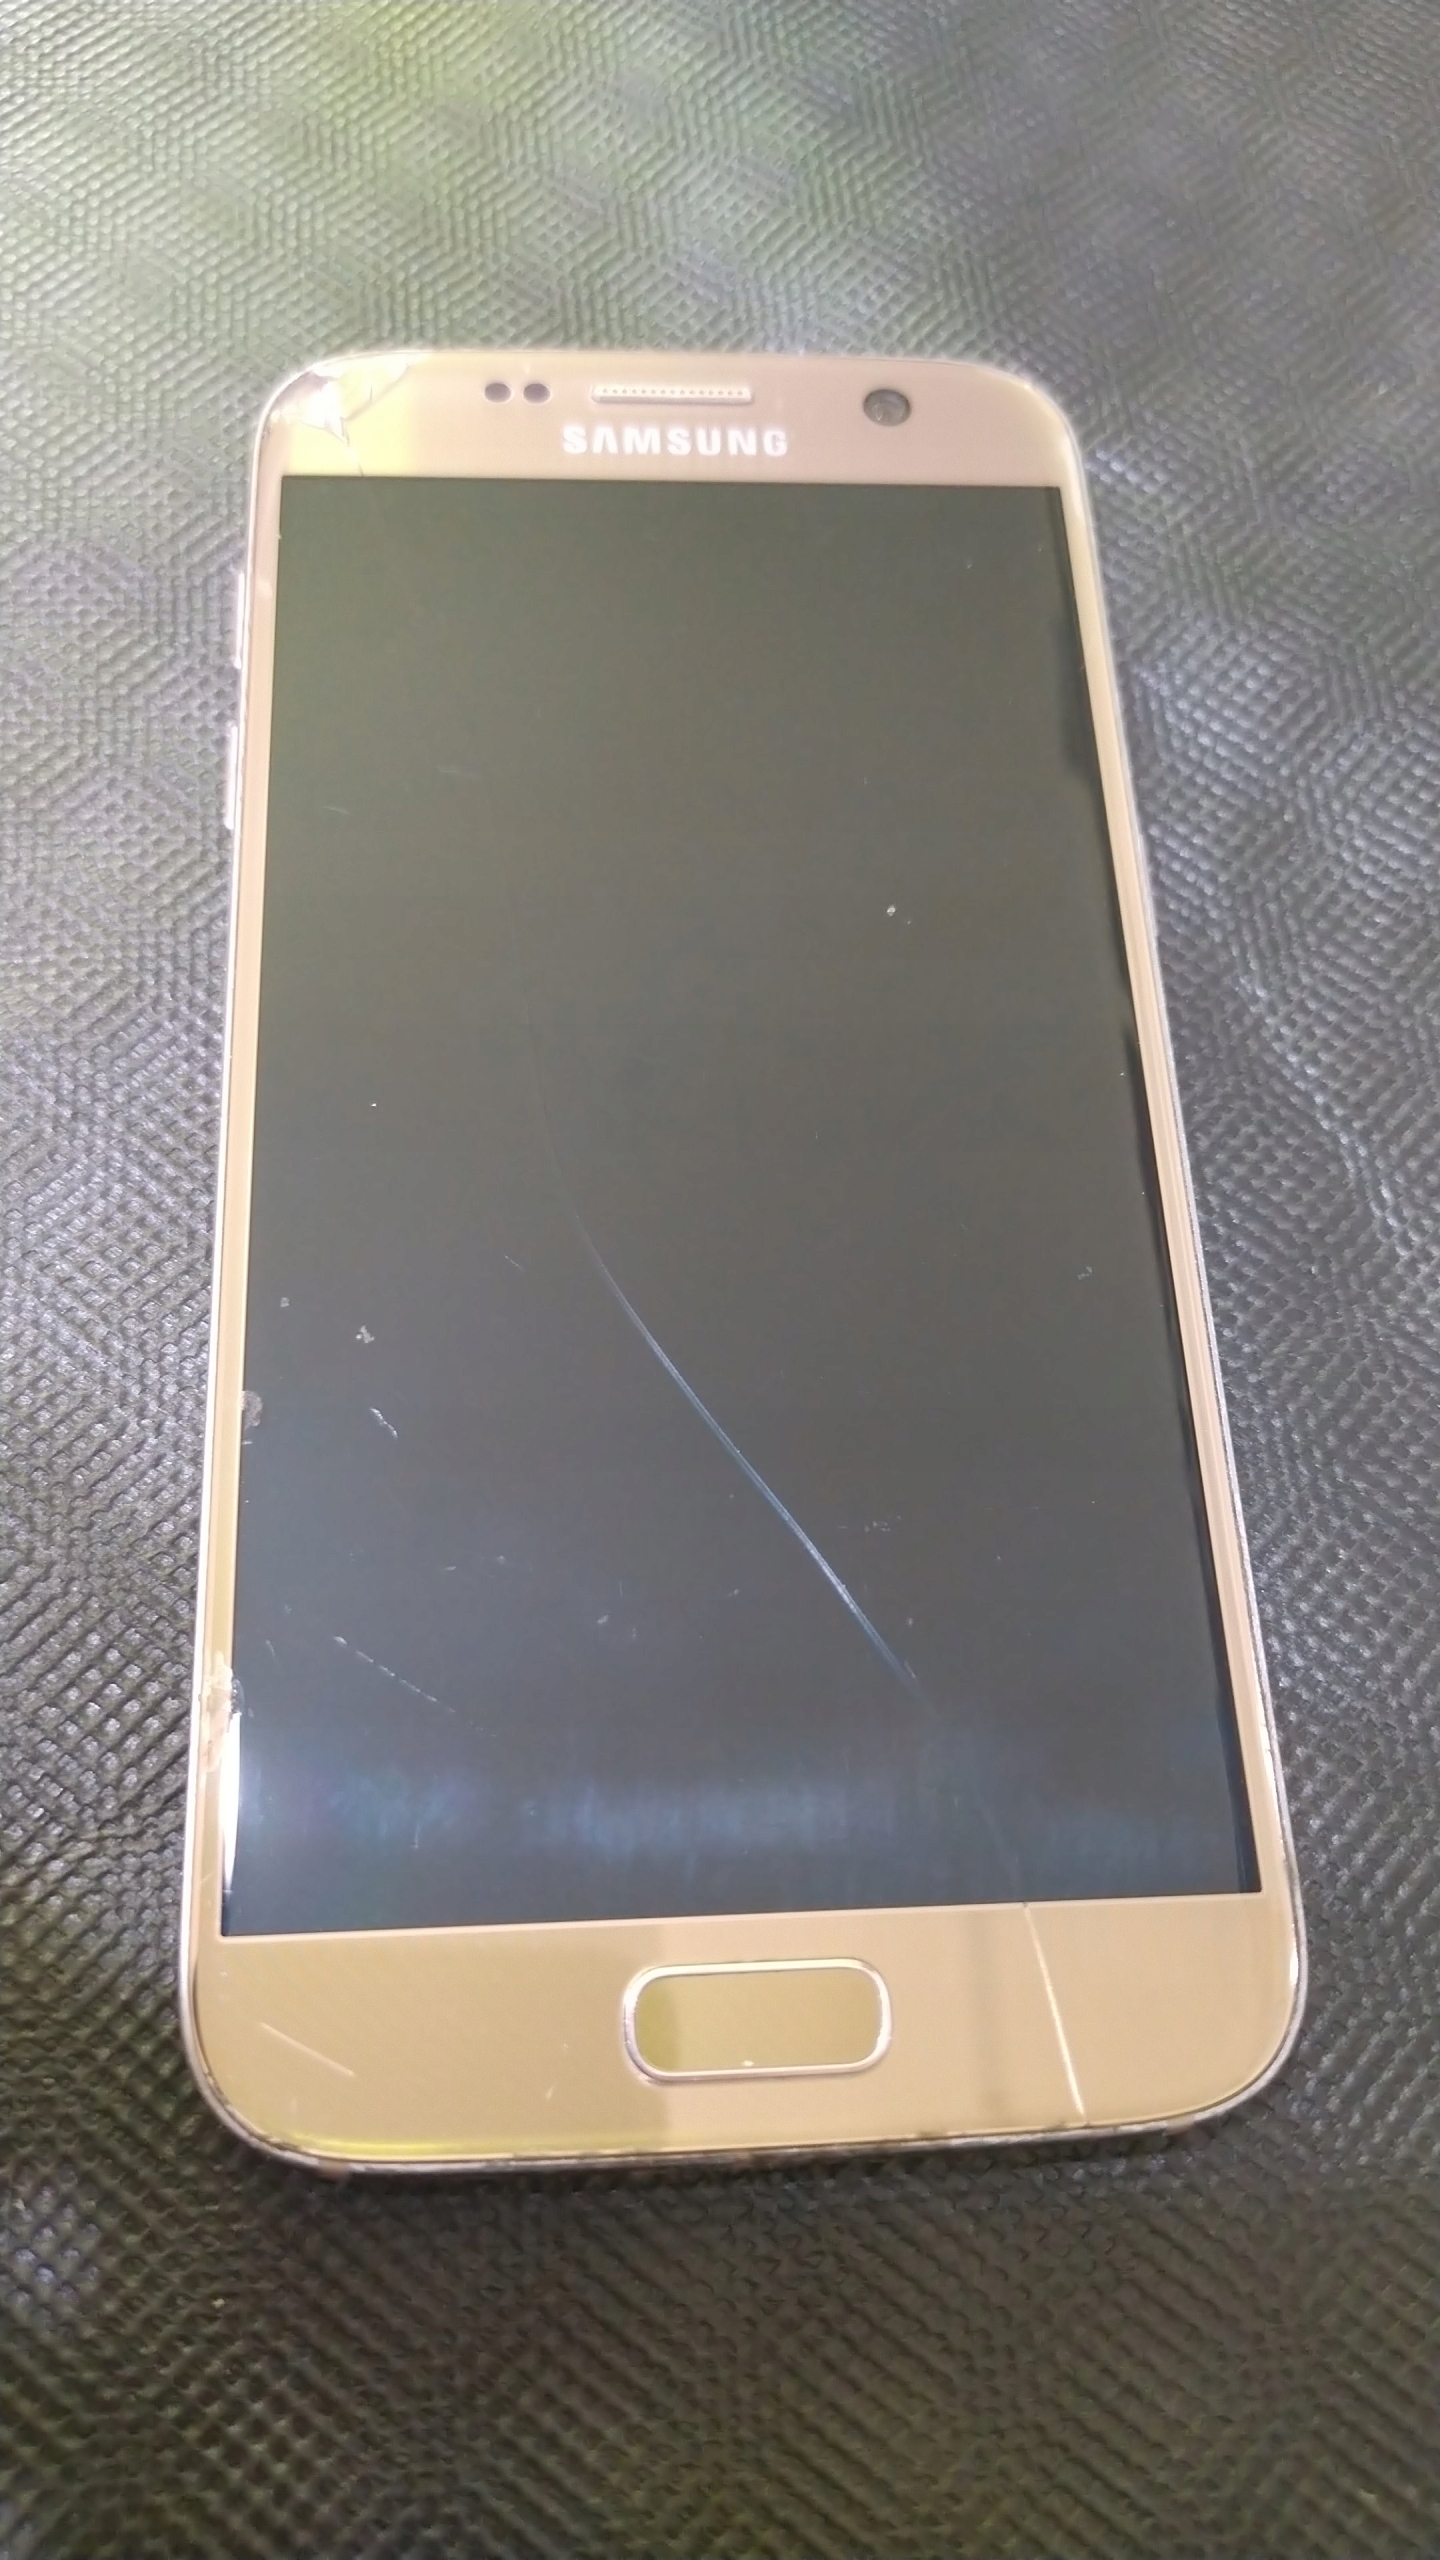 Samsung Galaxy S7 4 GB / 32 GB uszk. ekran, Popękany, raczej dla serwisów